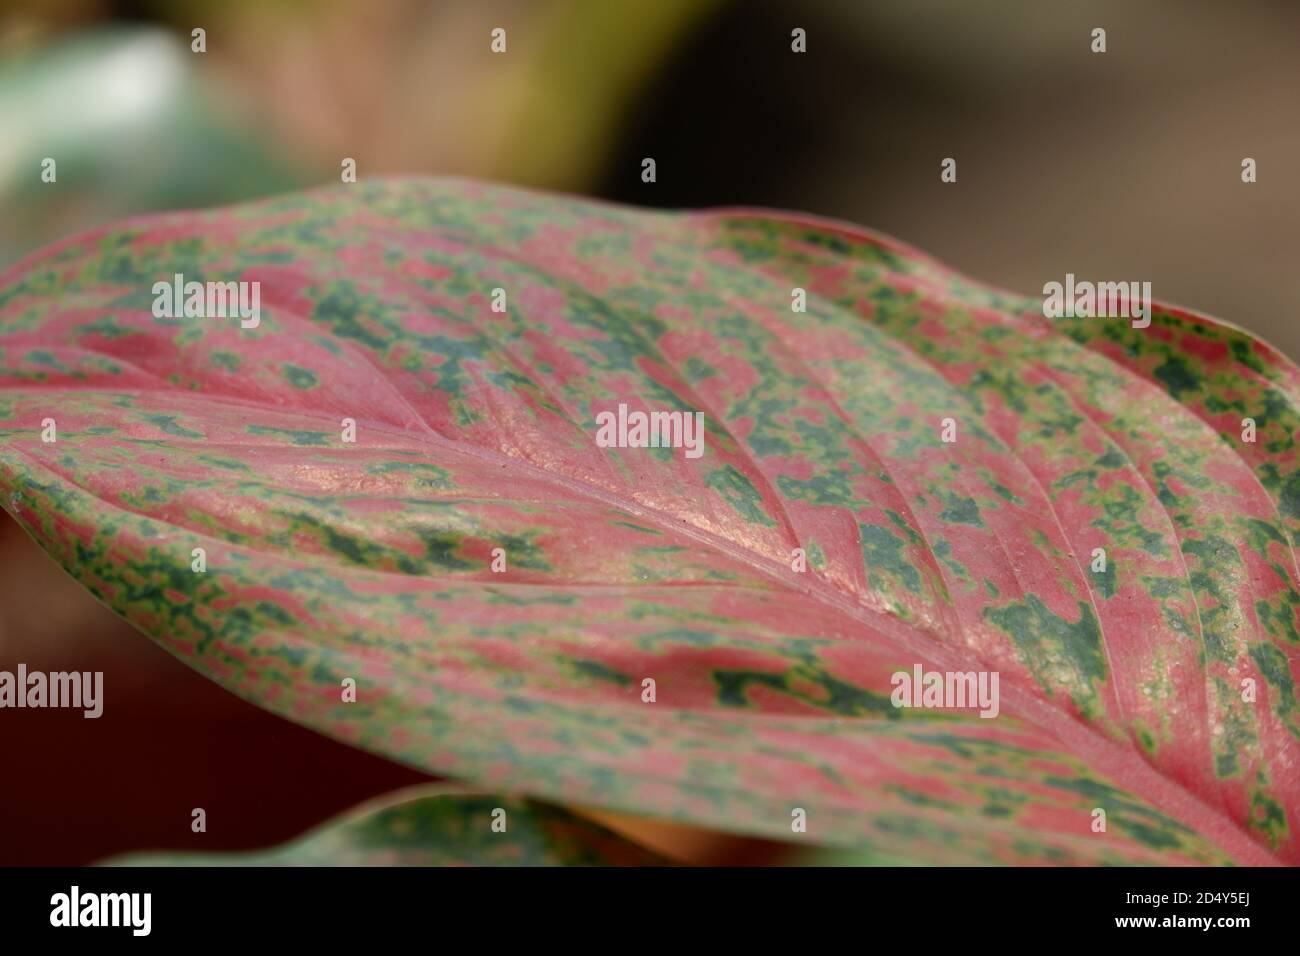 vue rapprochée de la texture des feuilles d'aglonema dans le jardin avec un arrière-plan plus bleu isolé Banque D'Images